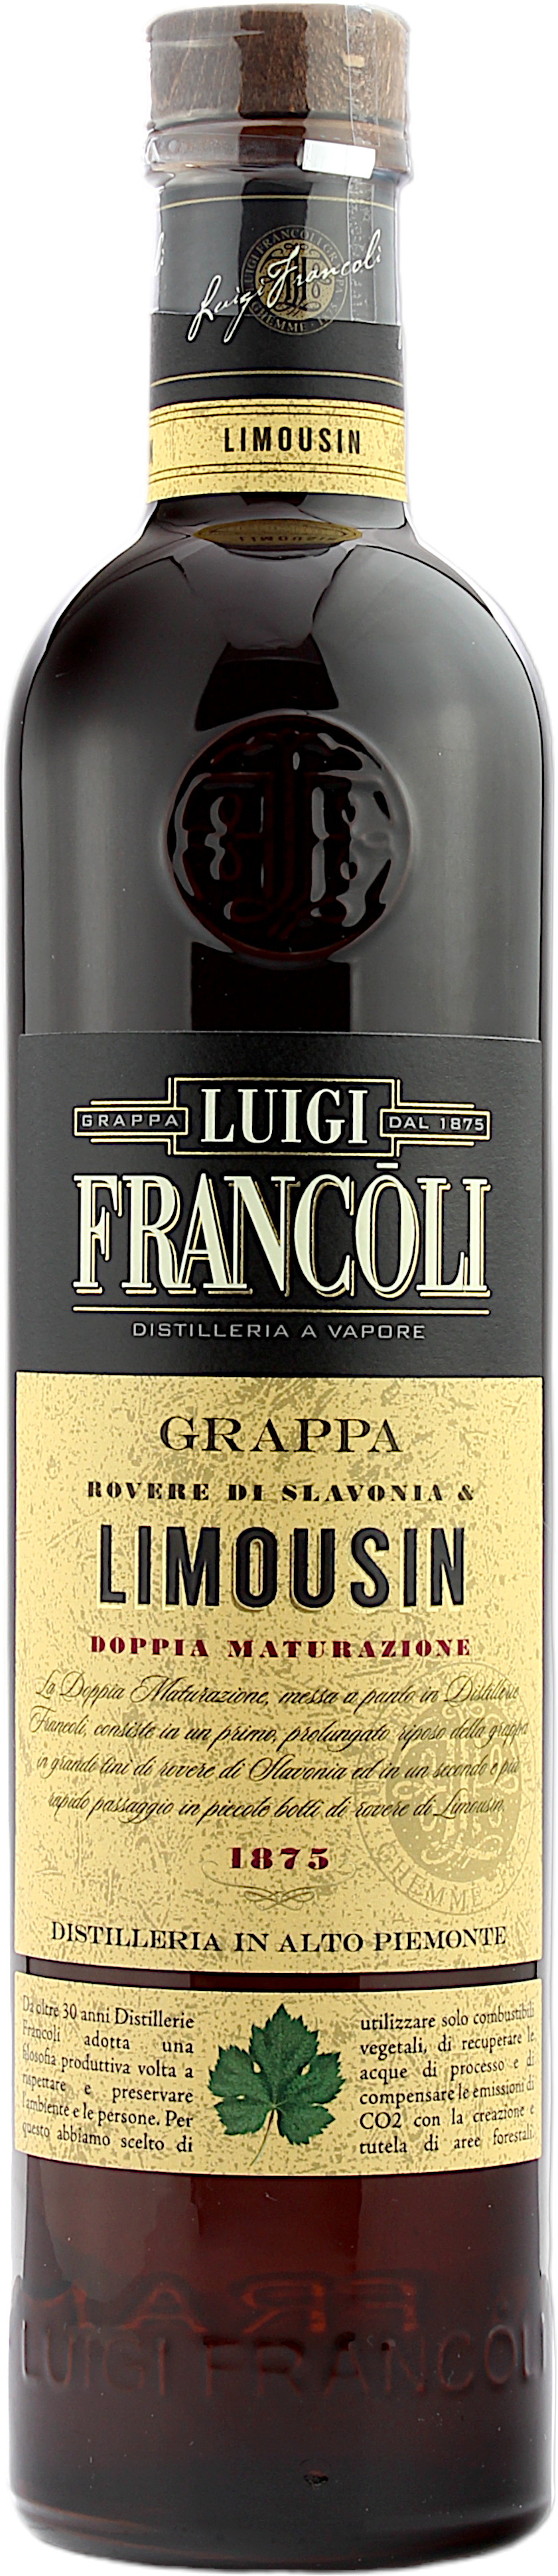 Luigi Francoli Grappa Limousin 42.5% 0,7l